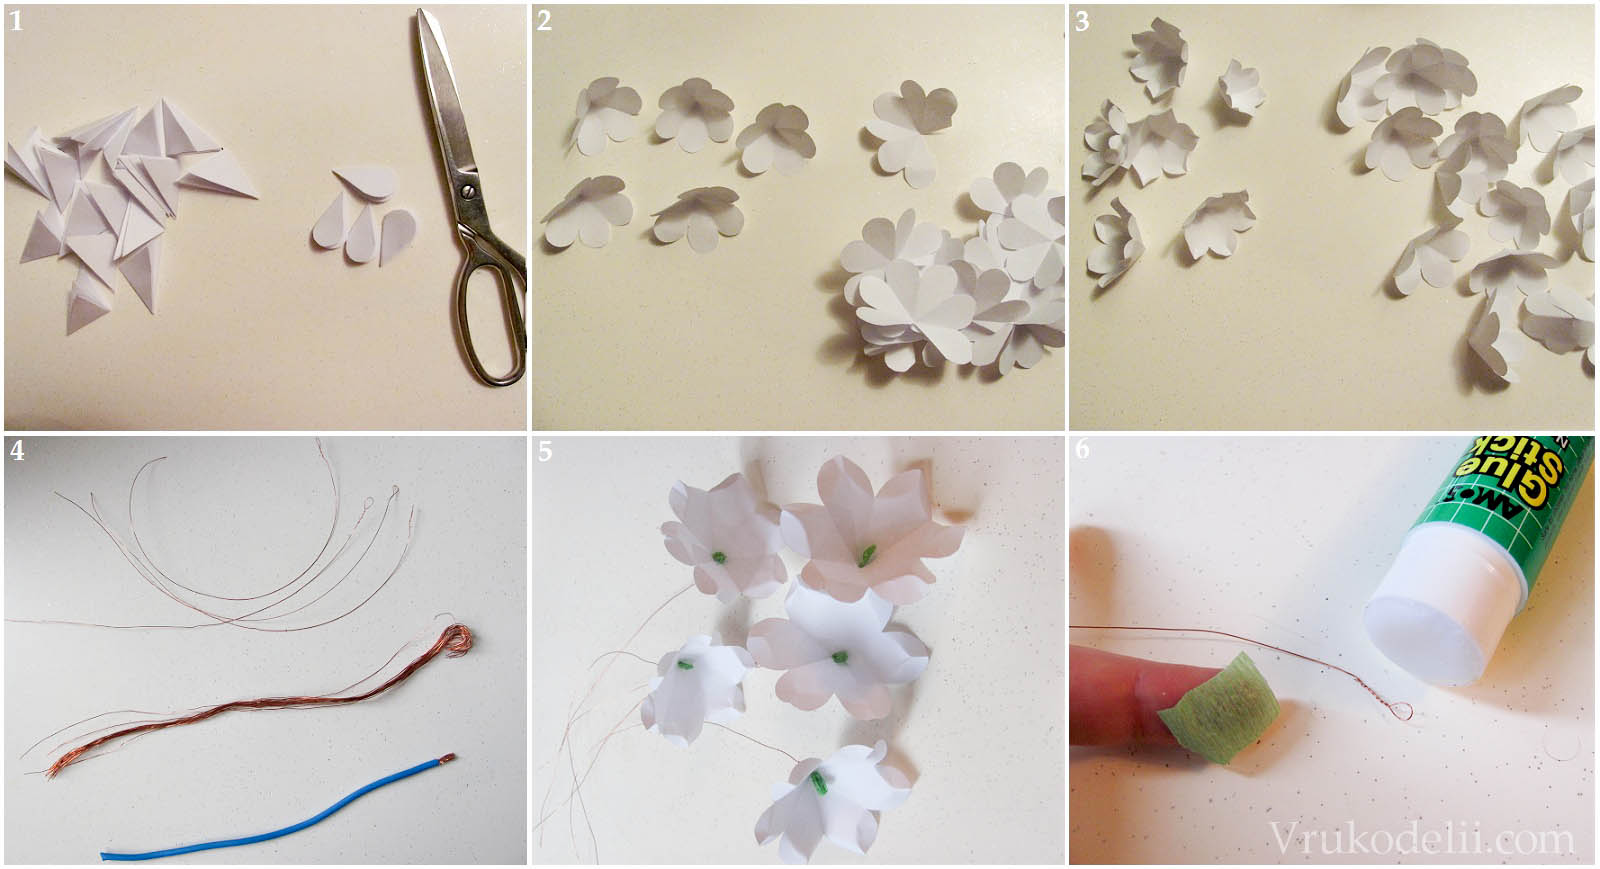 Как сделать своими руками цветы из бумаги для скрапбукинга